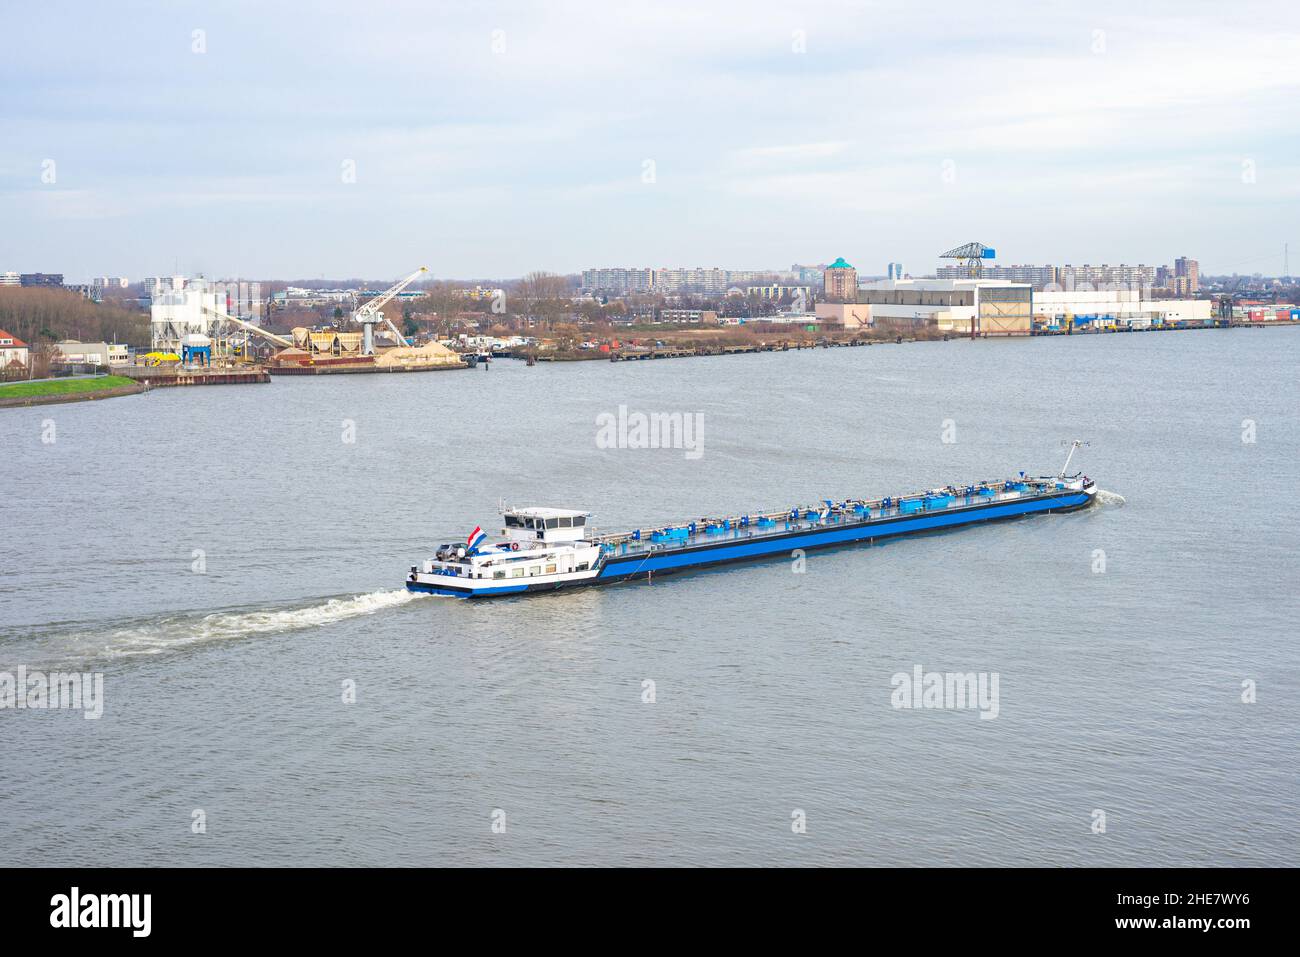 Un bateau marin intérieur navigue sur la Meuse (Meuse) près de Rotterdam, aux pays-Bas Banque D'Images